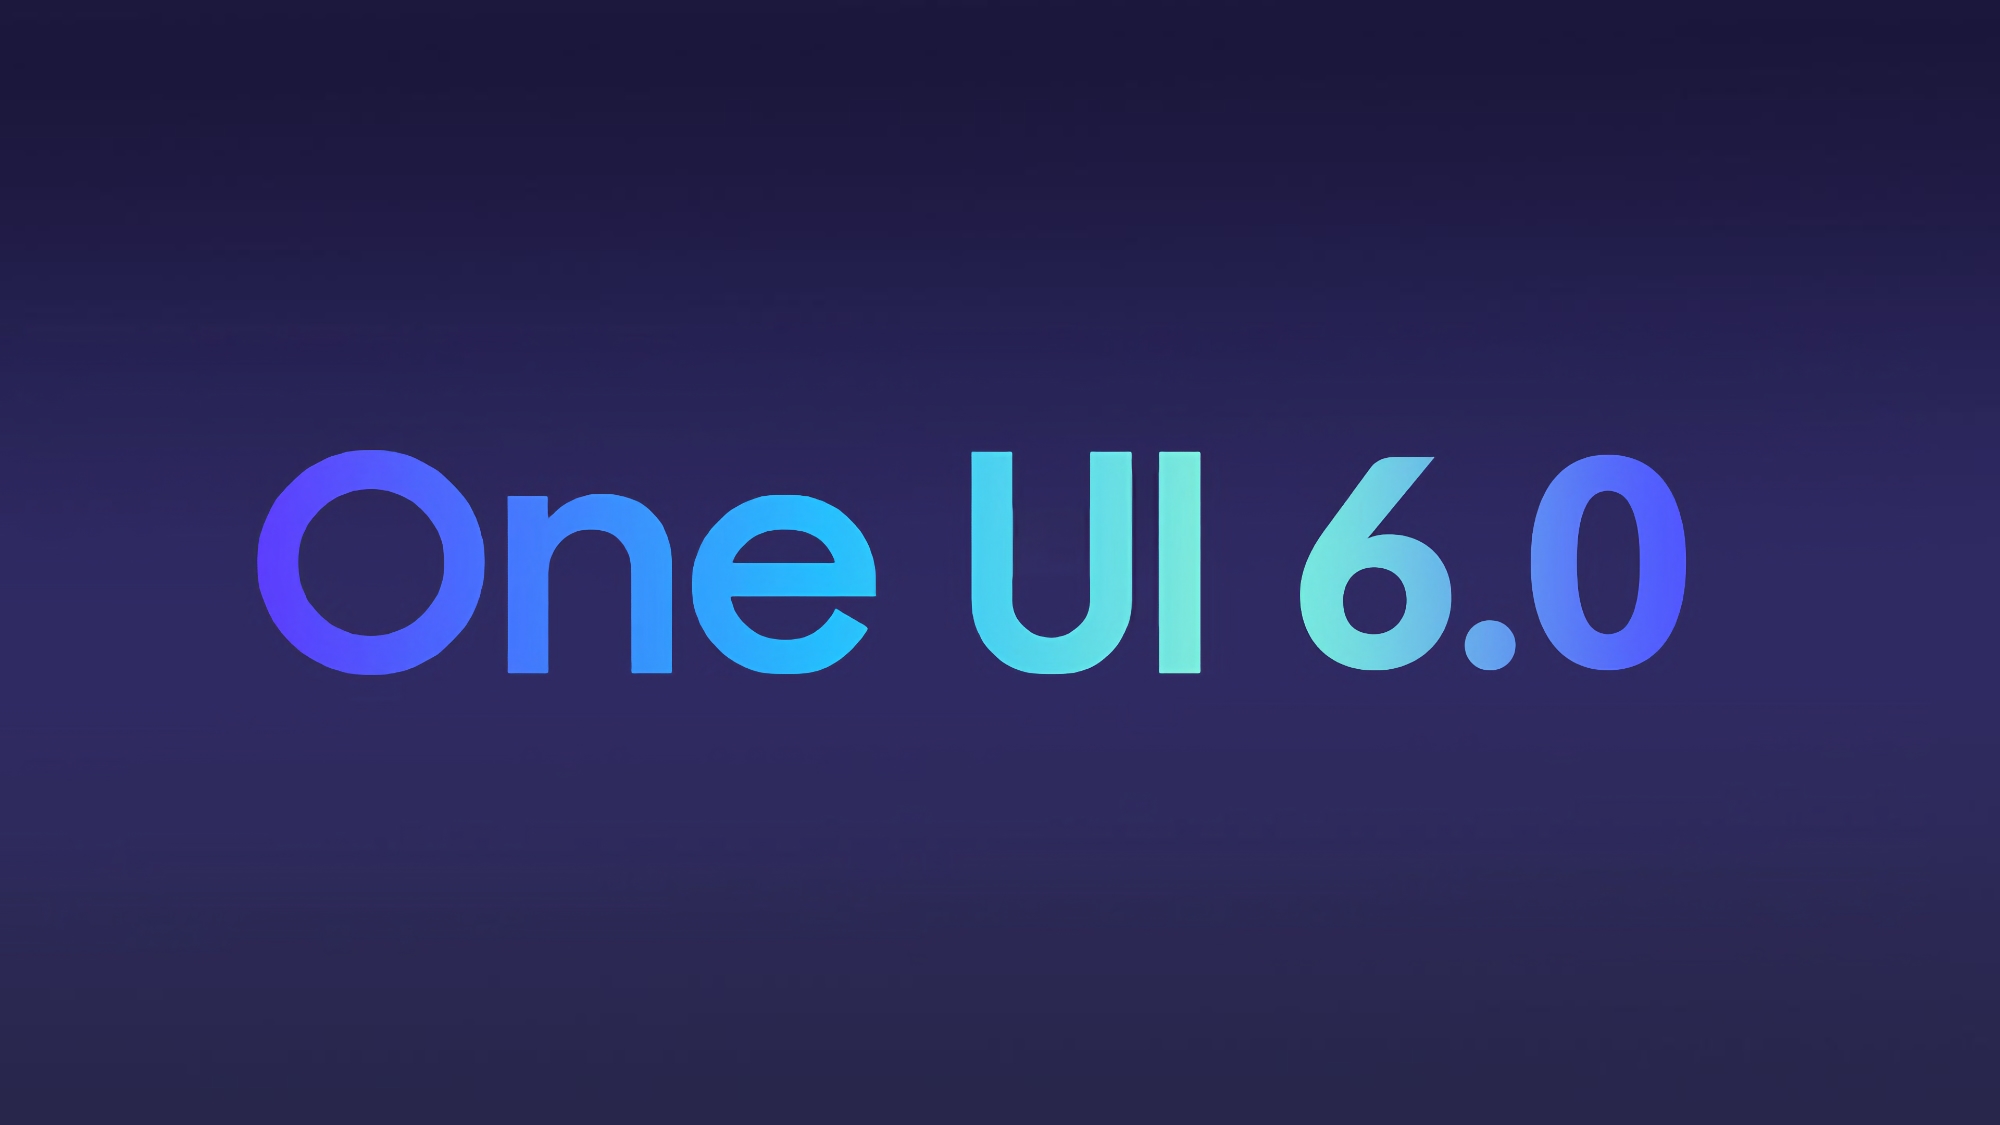 Samsung ha rivelato quando verrà rilasciata la beta di One UI 6.0 basata su Android 14 e quali saranno gli smartphone che la riceveranno per primi.